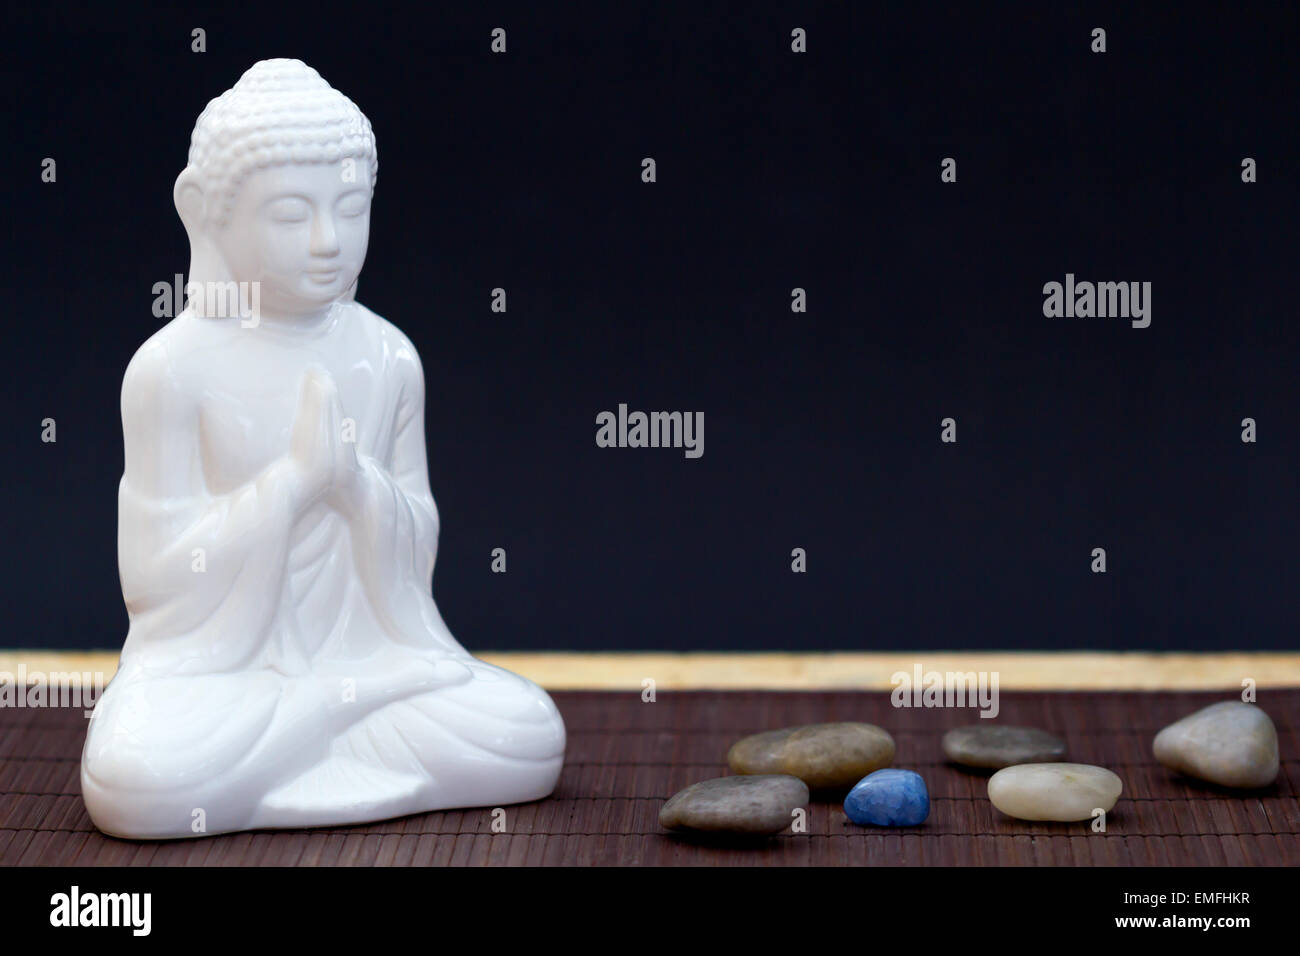 Figura blanca en pose de meditación con cantos rodados y una piedra azul Foto de stock